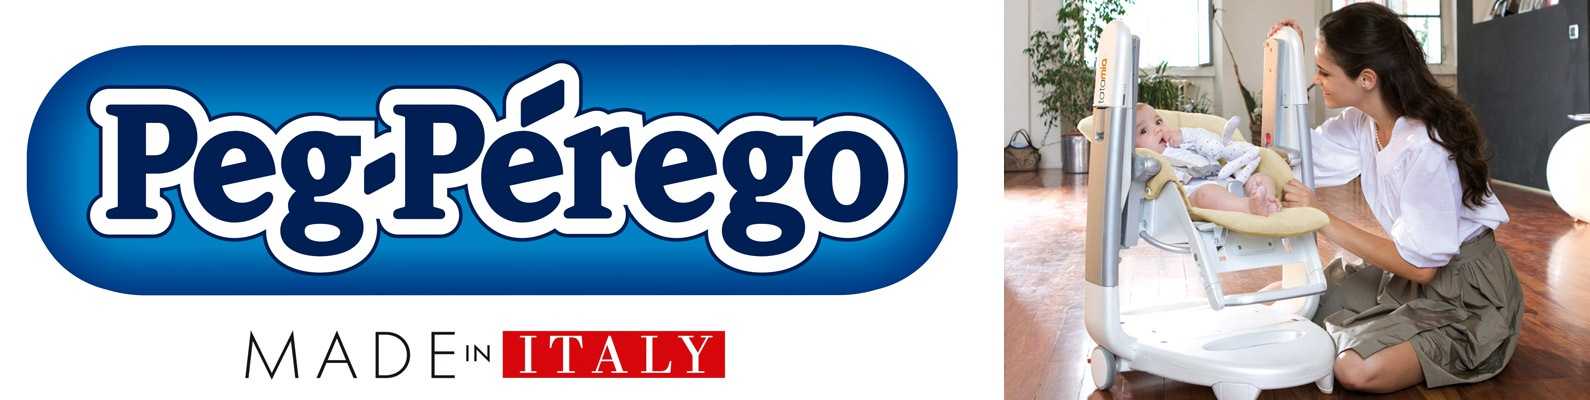 История бренда peg perego | brand info — информация о брендах